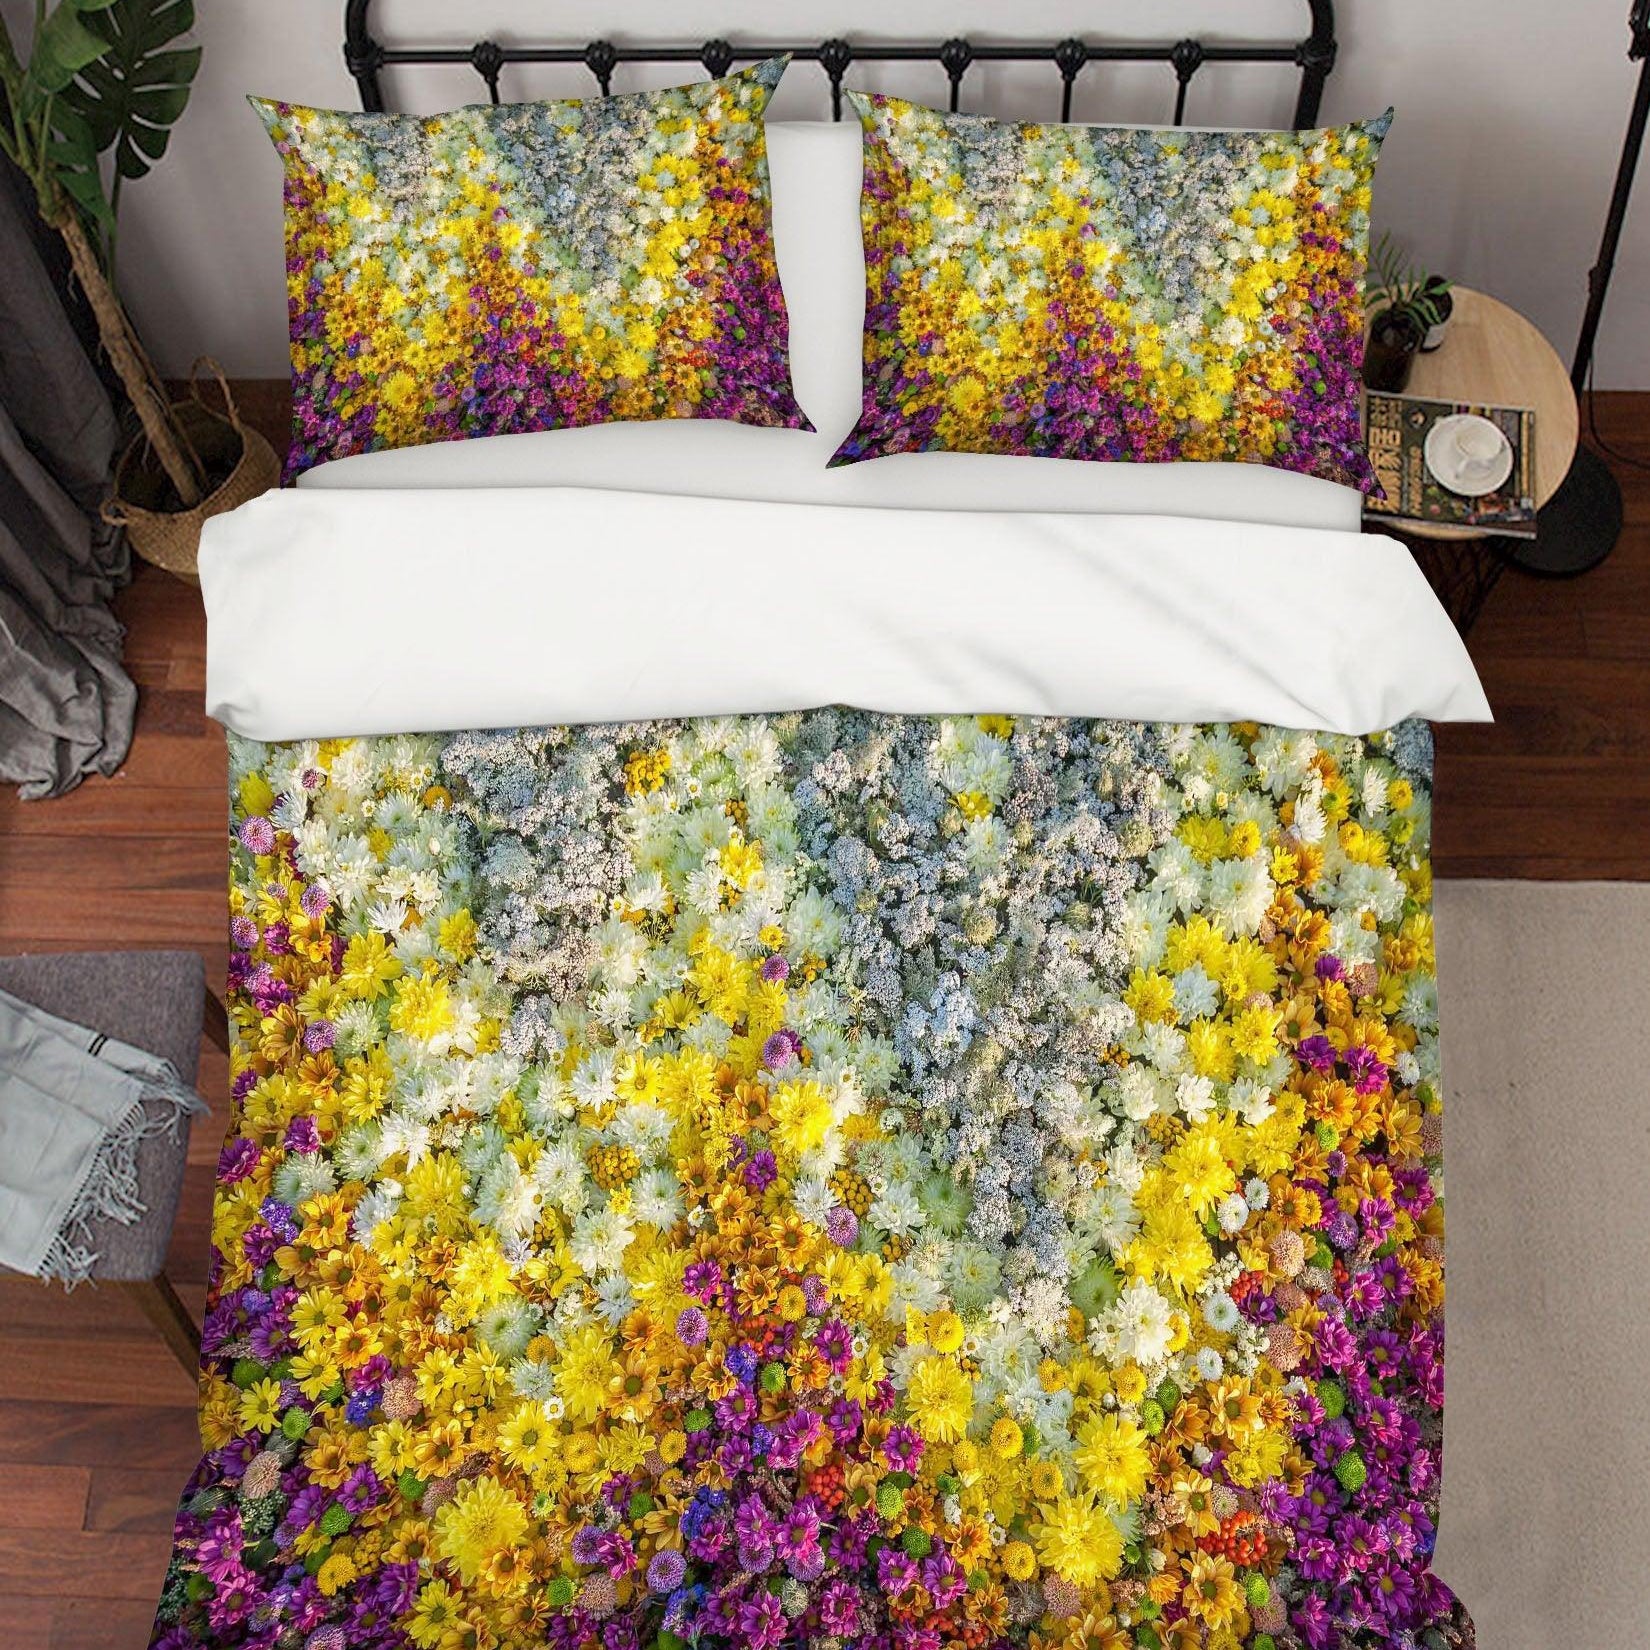 3D White Flowers Quilt Cover Set Bedding Set Pillowcases 125- Jess Art Decoration